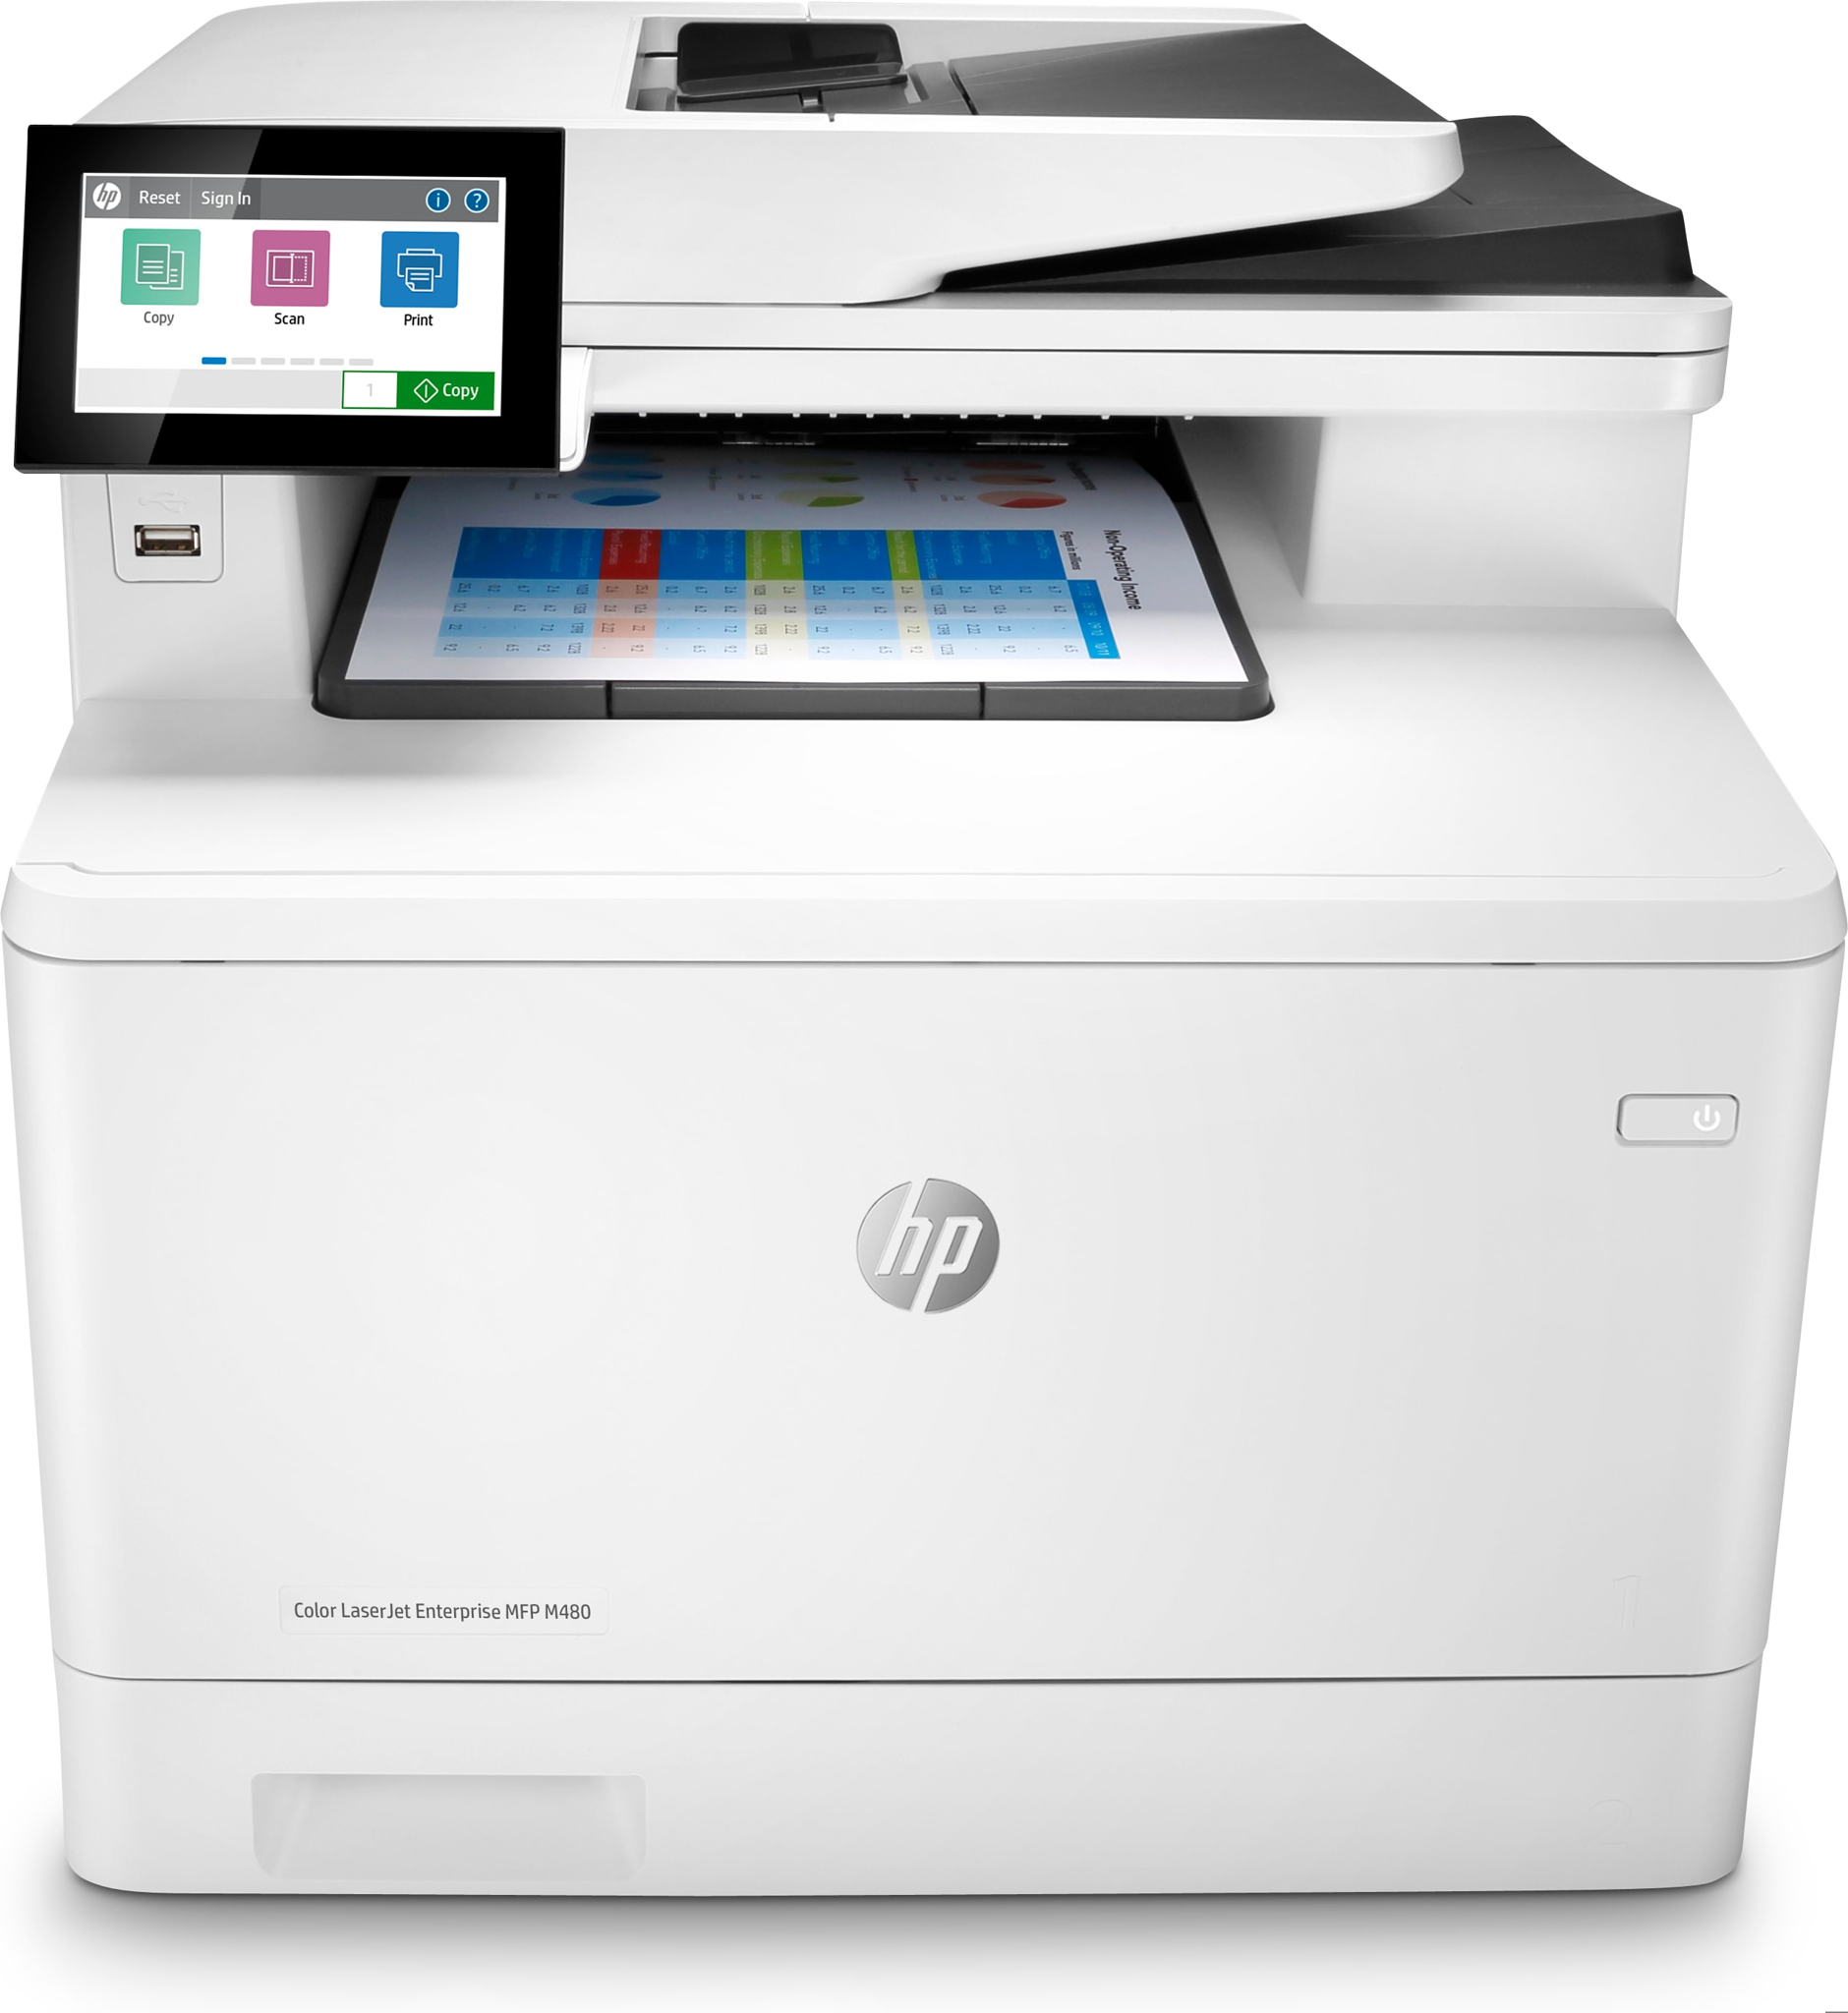 Bild von HP Color LaserJet Enterprise MFP M480f - Farbe - Drucker für Kleine &amp; mittelständische Unternehmen - Drucken - Kopieren - Scannen - Faxen - Kompakte Größe; Hohe Sicherheit; Beidseitiger Druck; ADF für 50 Blatt; Energieeffizient - Laser - Farbdruck - 600 